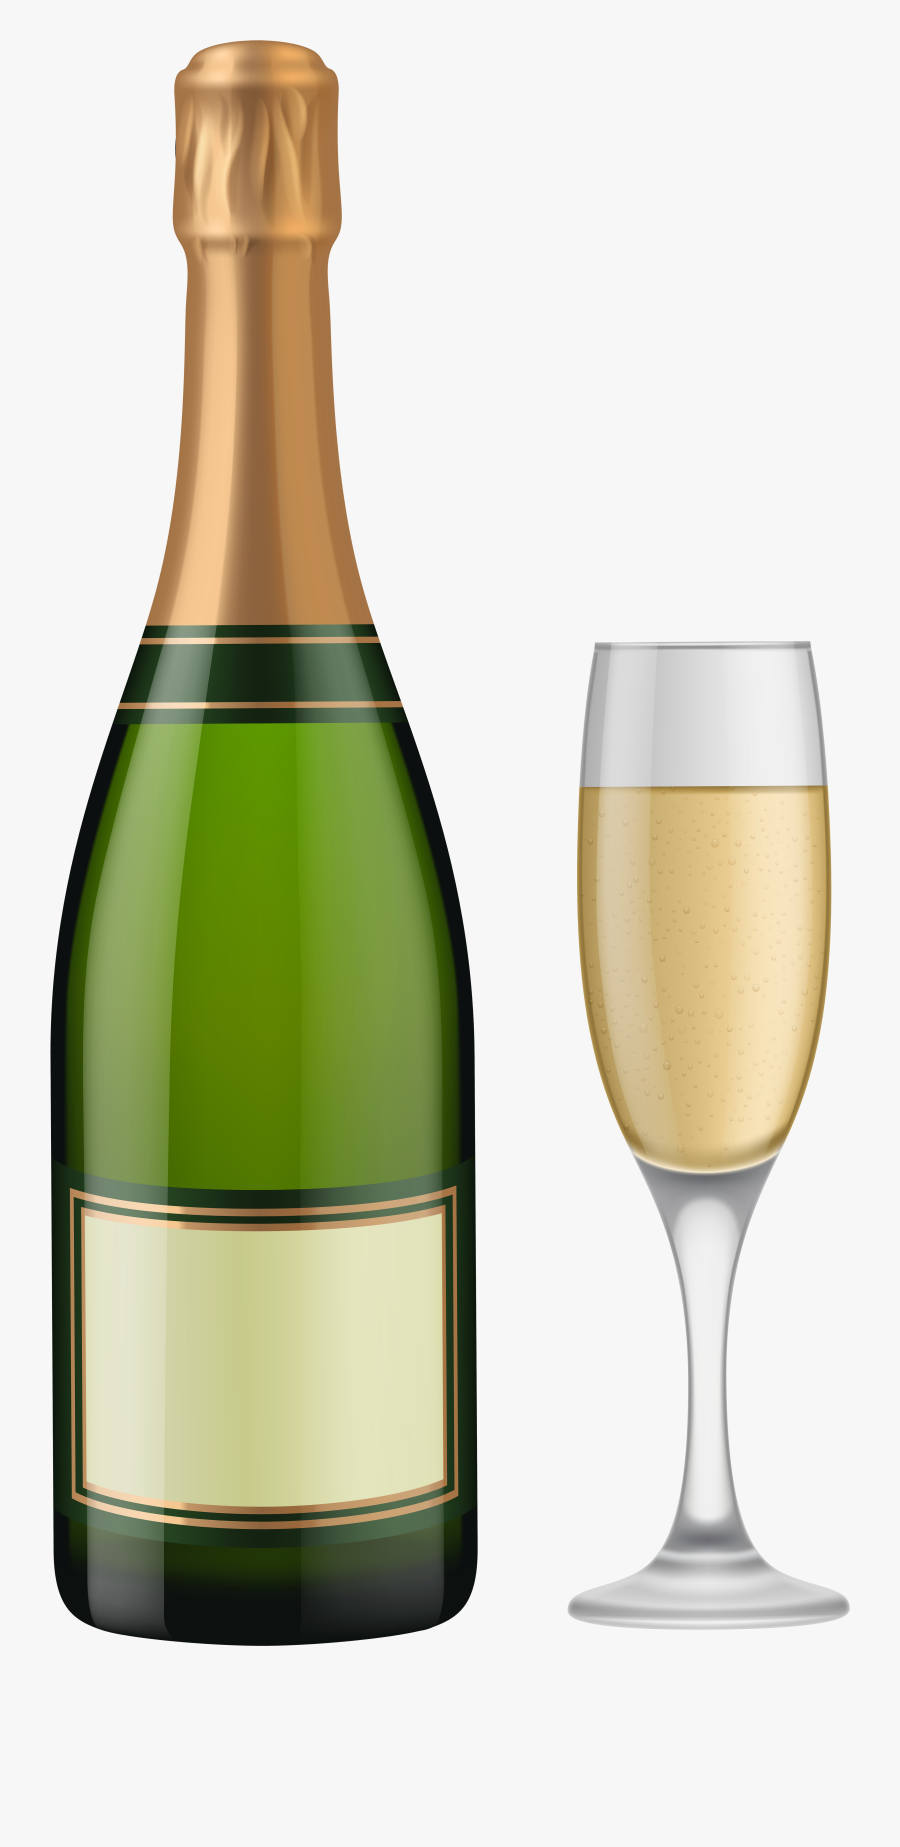 Clip Art Alcohol Vector Bottle - Transparent Champagne Bottle Clipart, Transparent Clipart